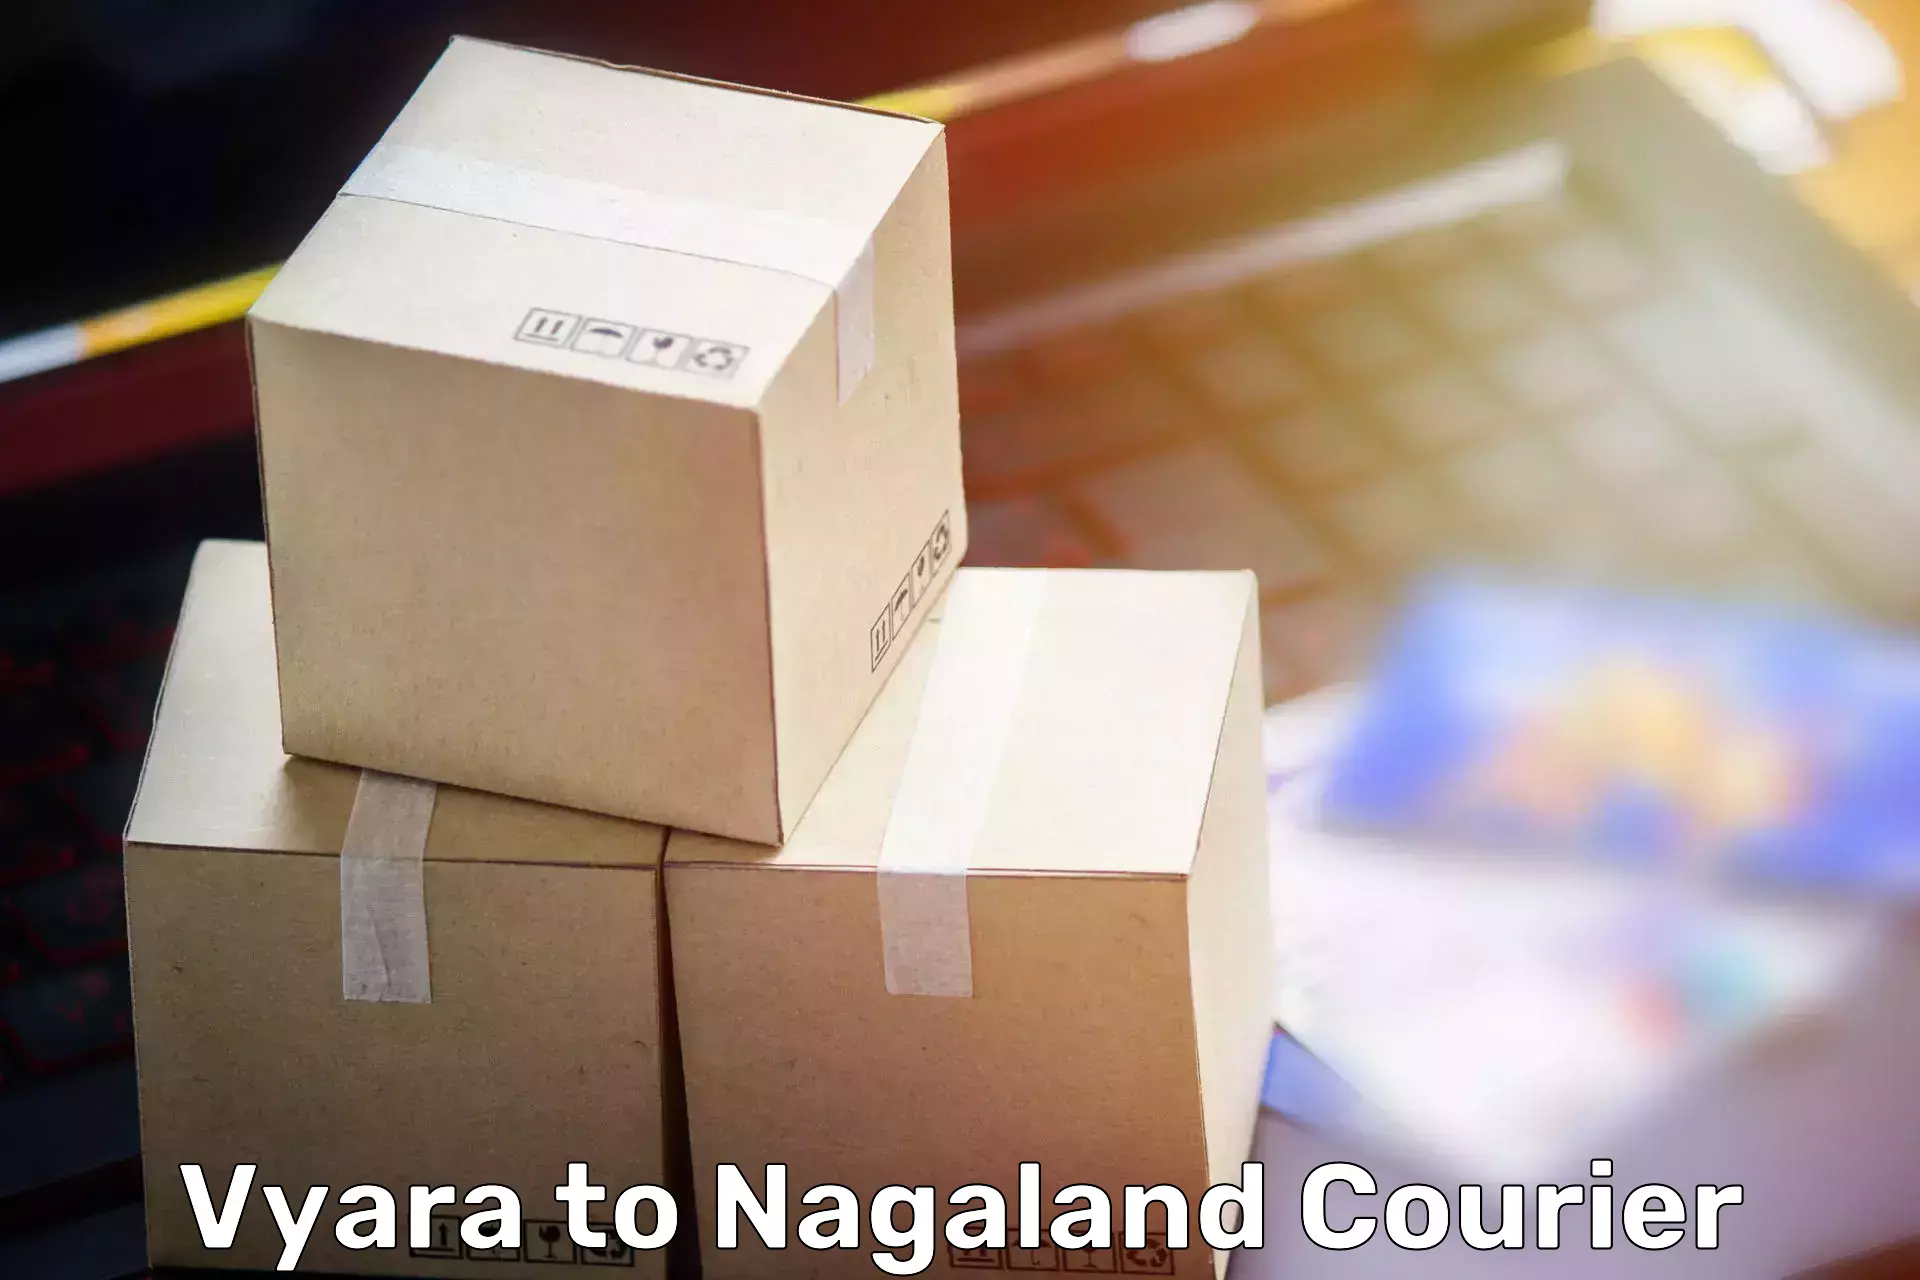 Efficient moving company Vyara to Nagaland